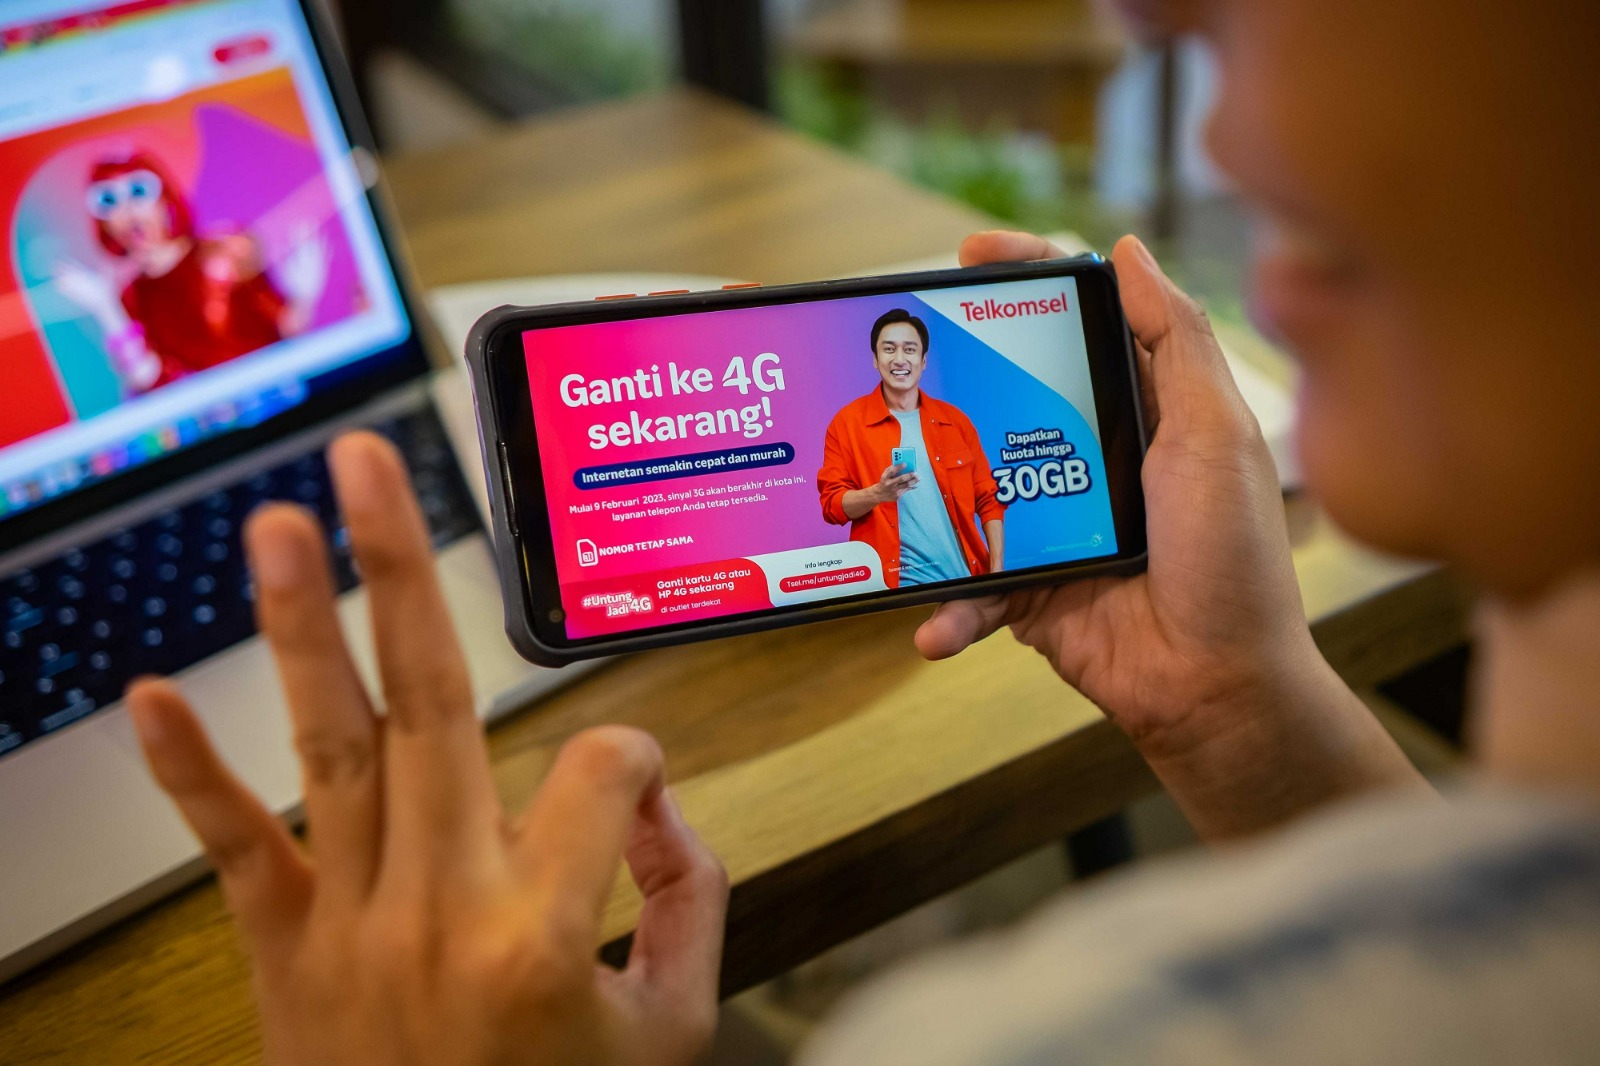 Telkomsel Lanjutkan Upgrade Layanan 3G ke 4G/LTE di 300 Kota/Kabupaten Mulai Februari 2023